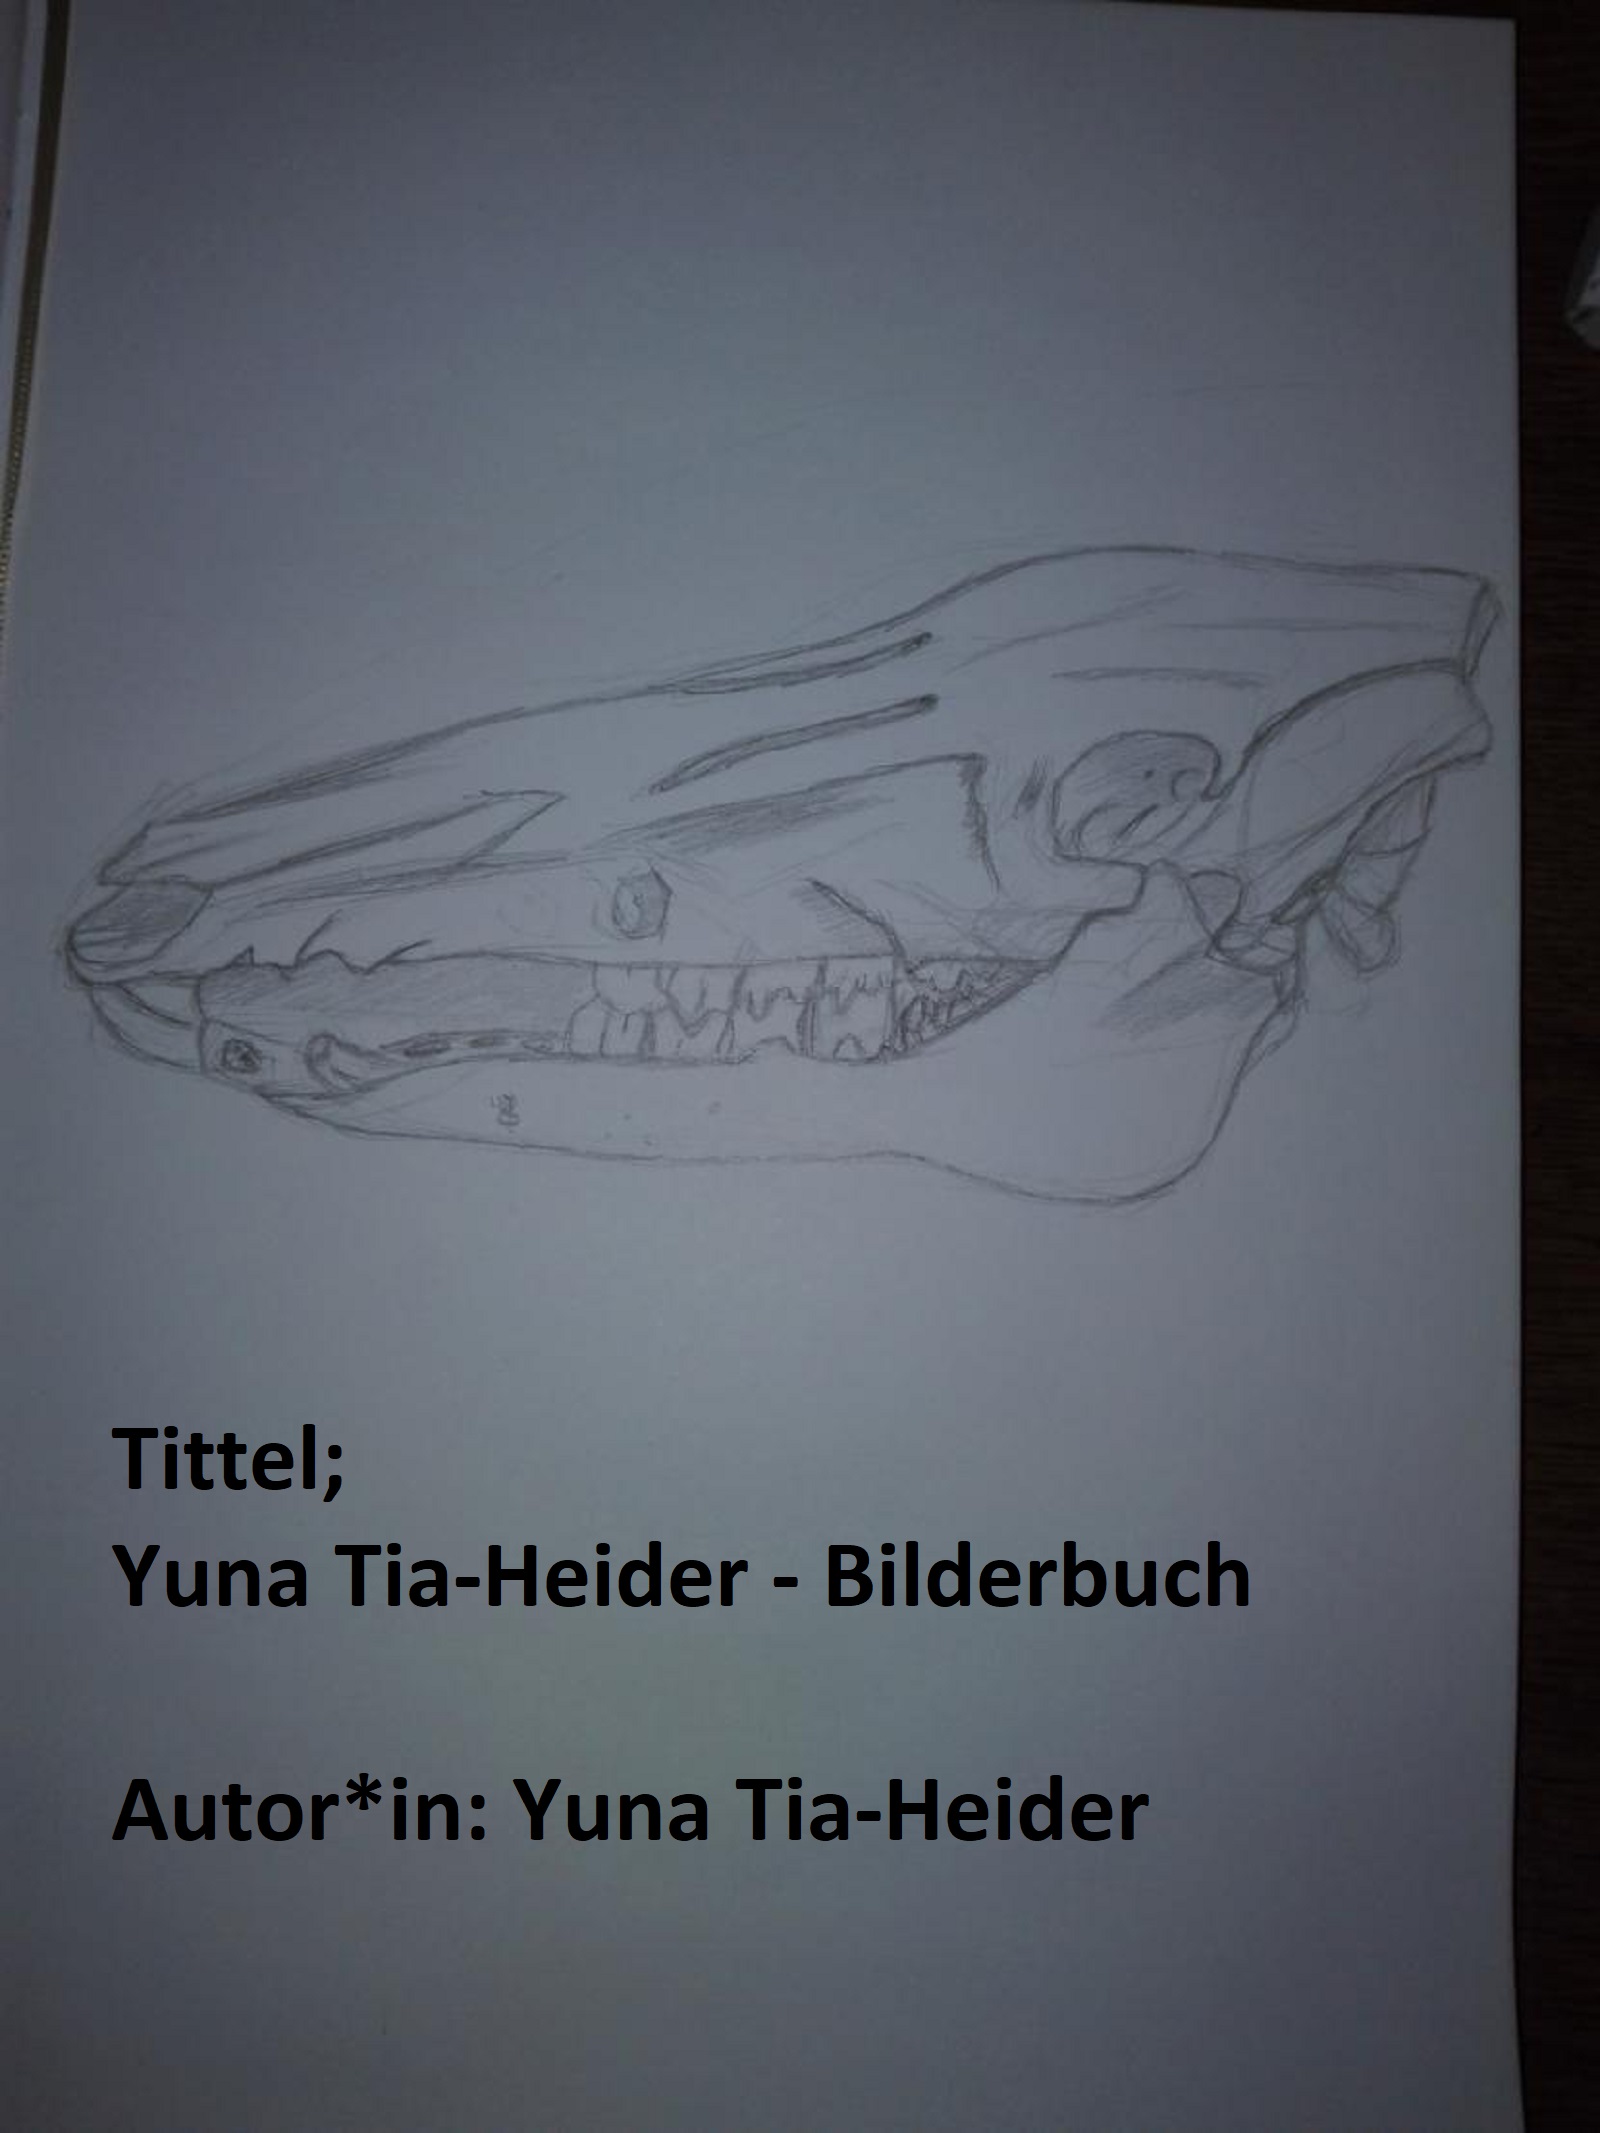 Yuna Tia-Heider - Bilderbuch